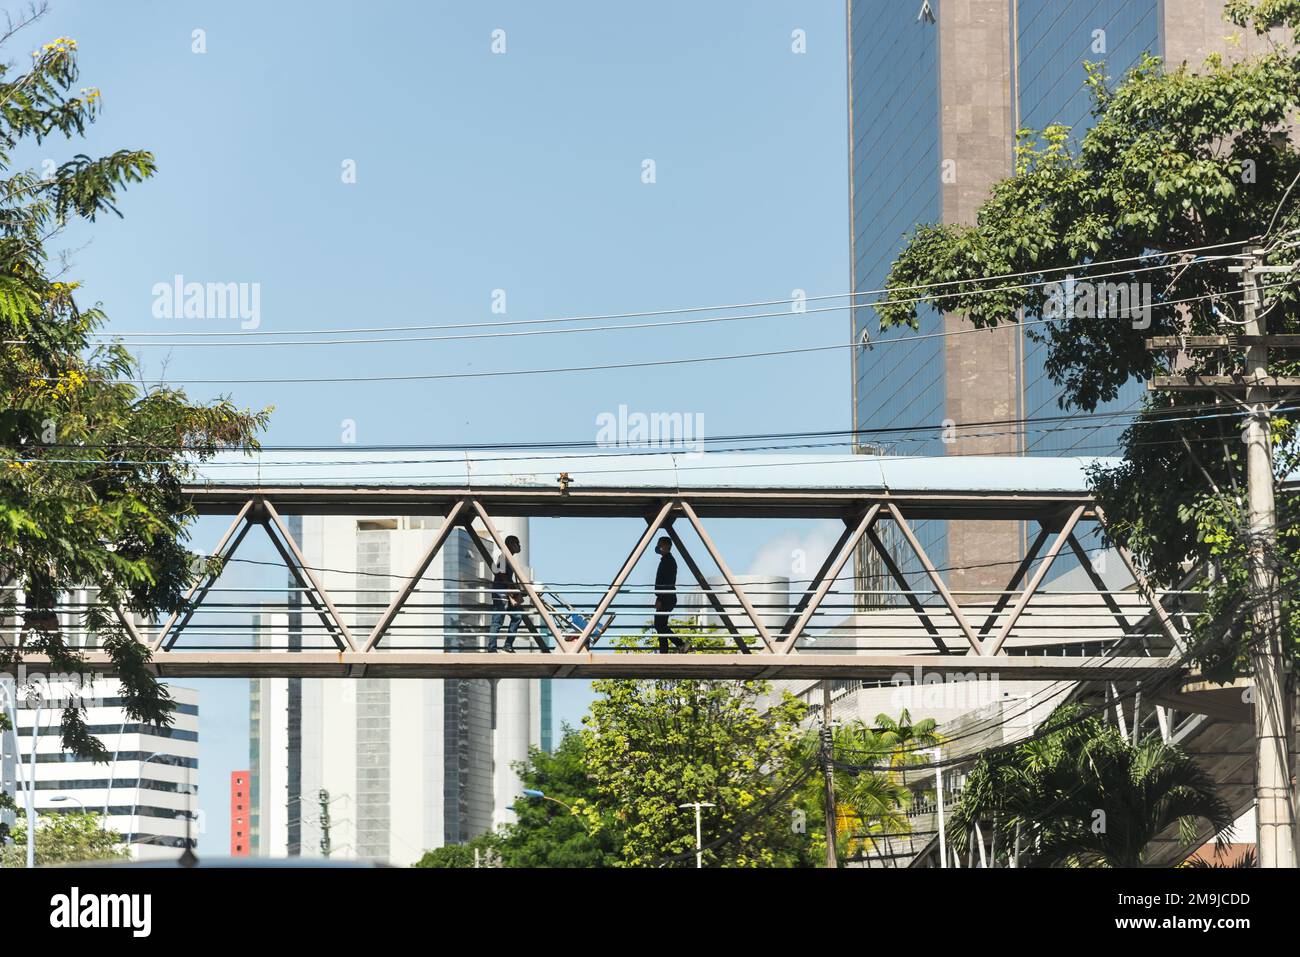 Salvador, Bahia, Brasile - 06 maggio 2022: Pedoni stanno attraversando un ponte pedonale nel centro della città di Salvador, Brasile. Foto Stock